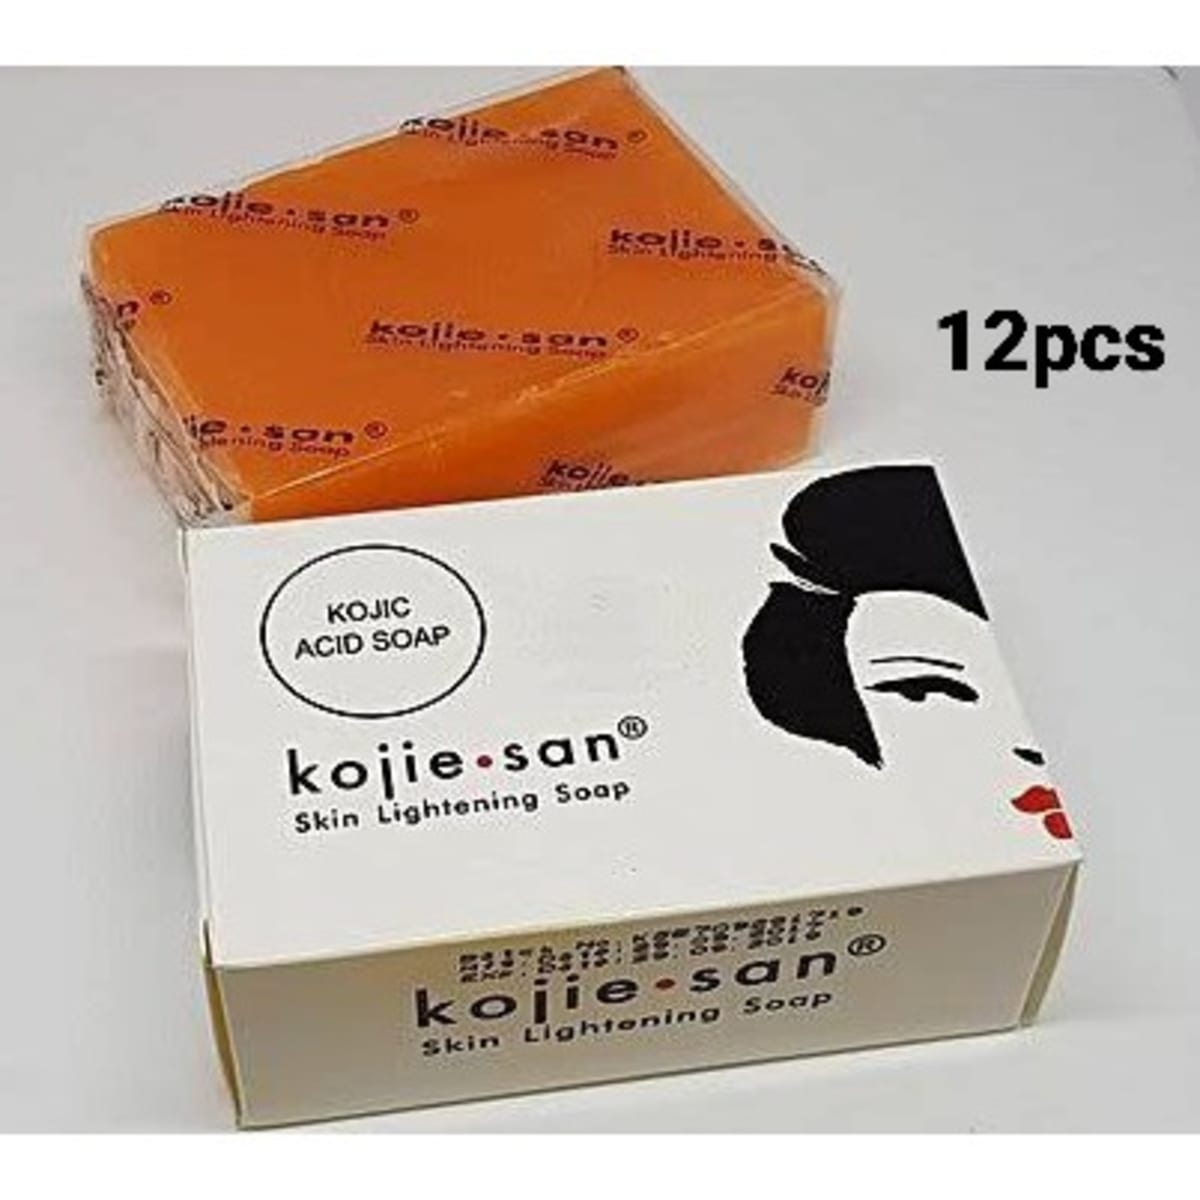 Kojie San Acid Soap - 12 Pieces